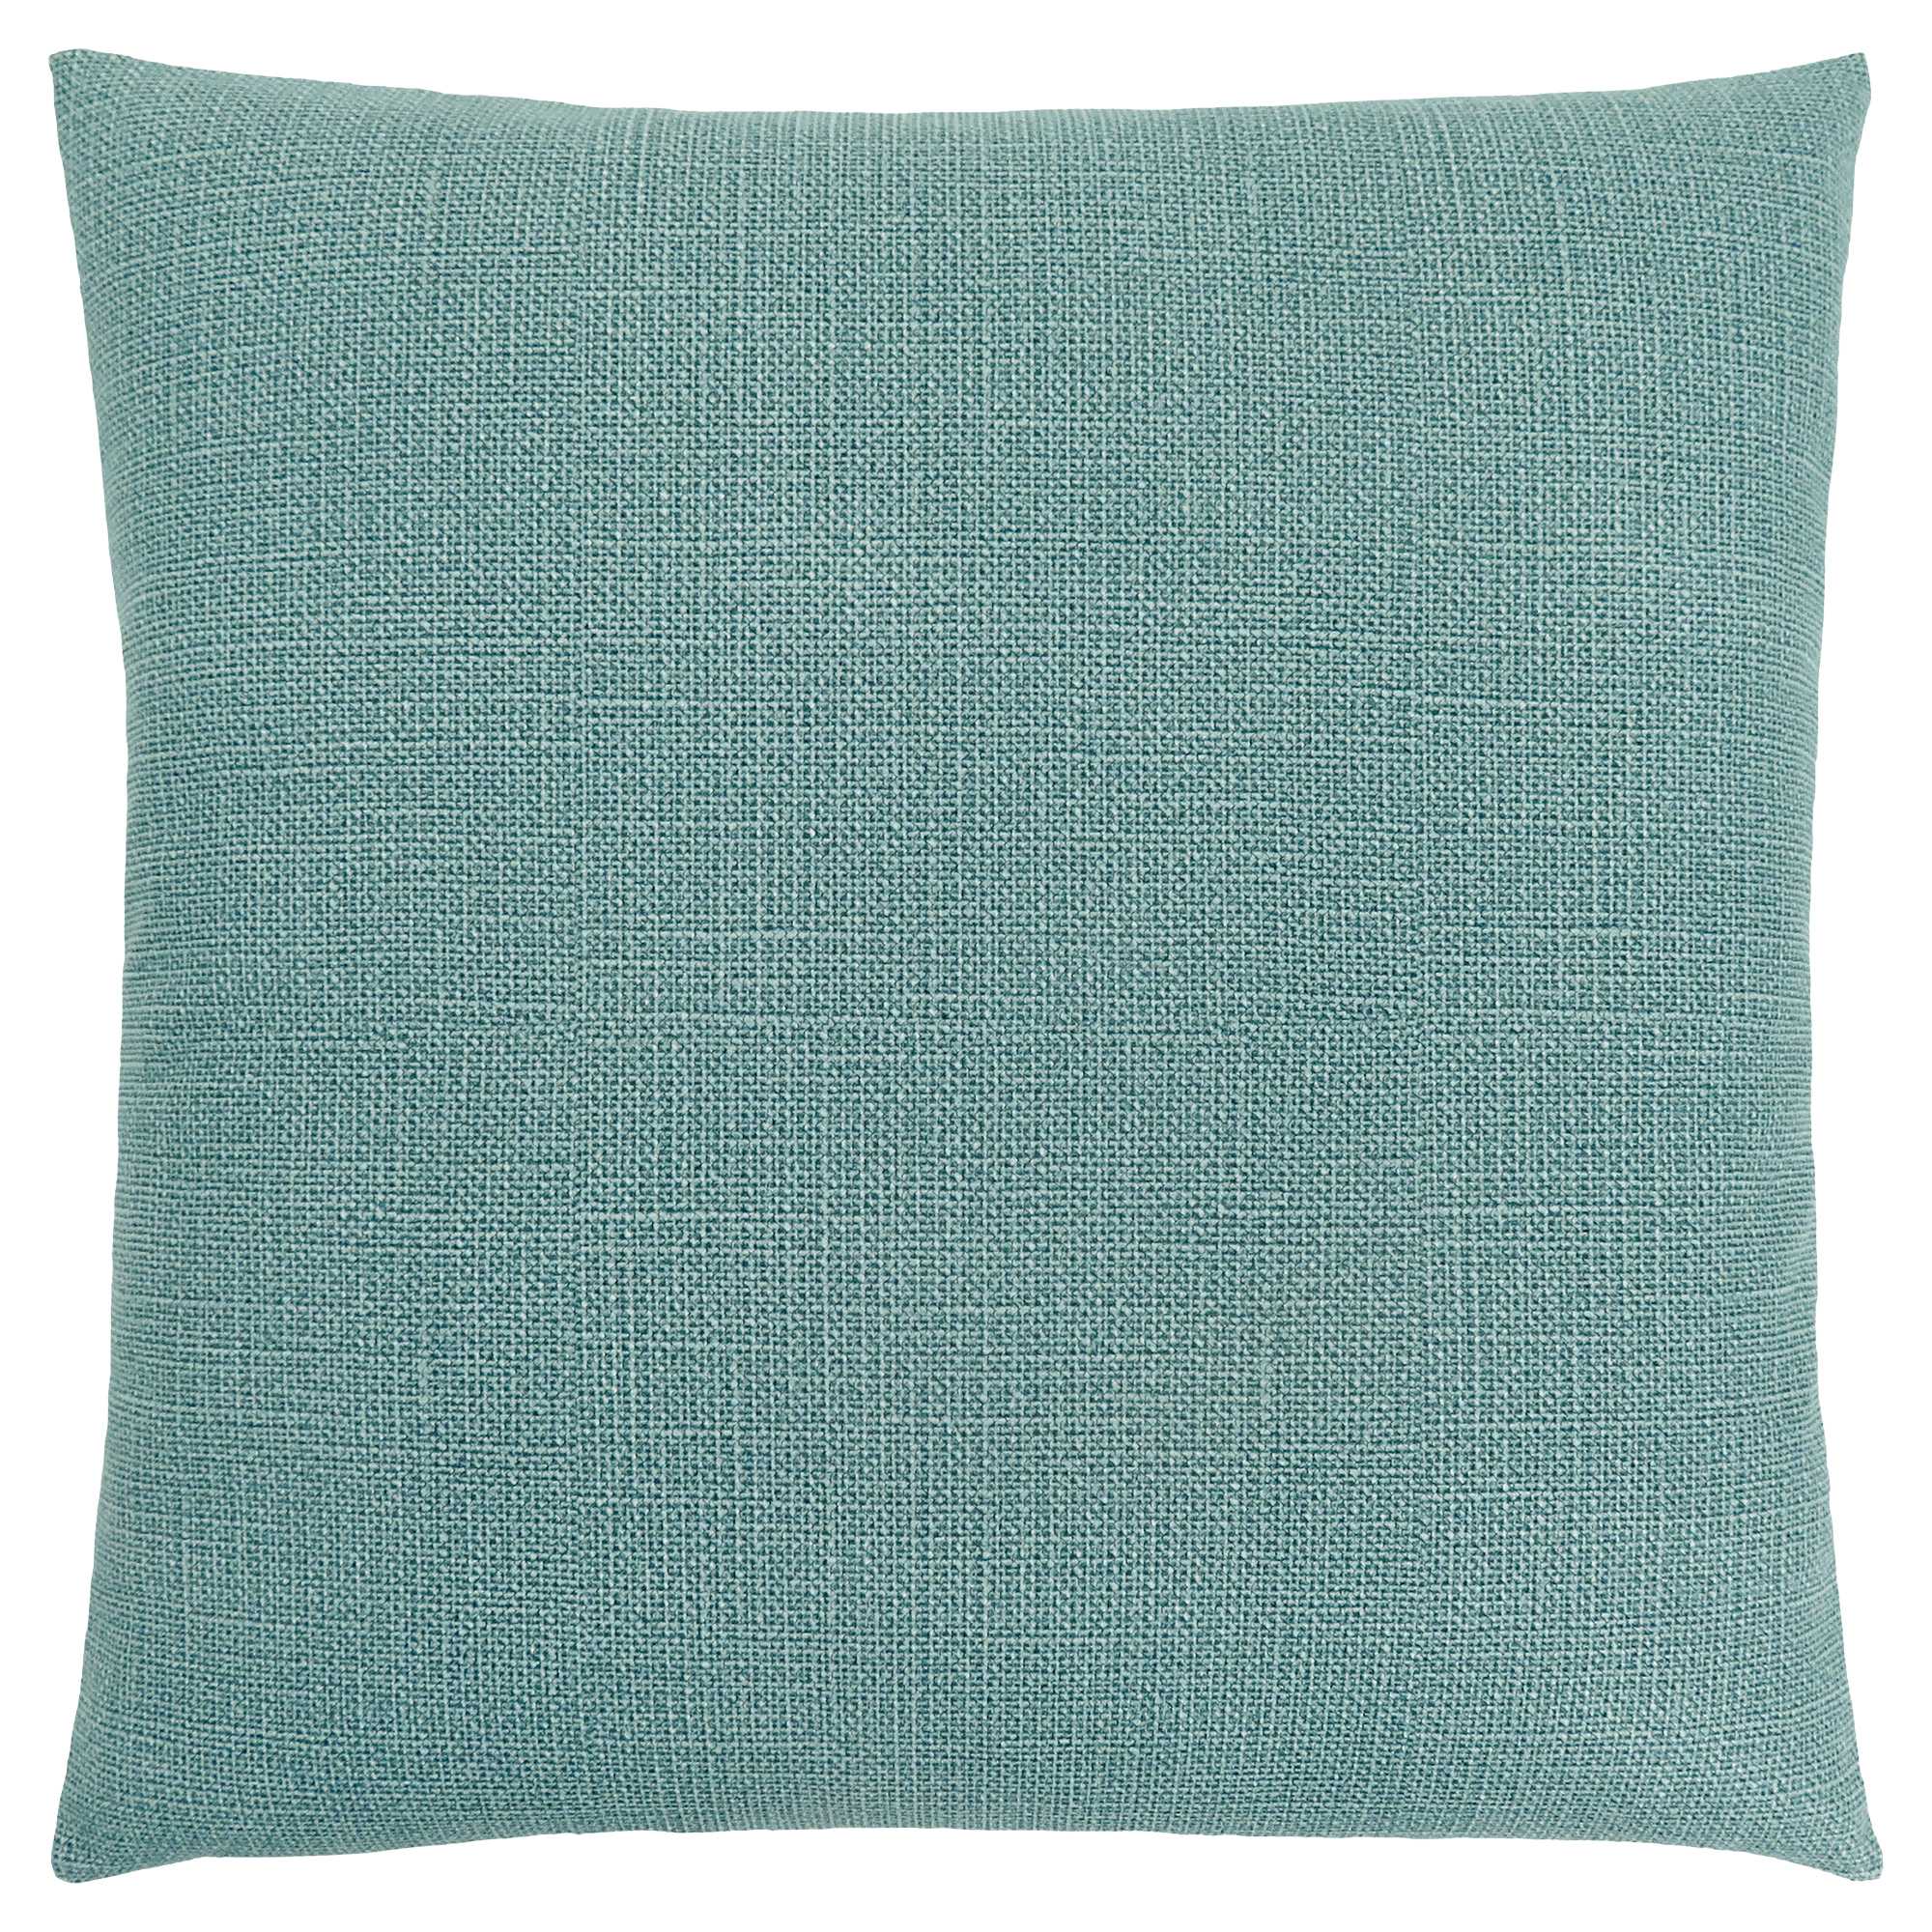 18" X 18" Light Green Polyester Interlocking Zippered Pillow-344049-1